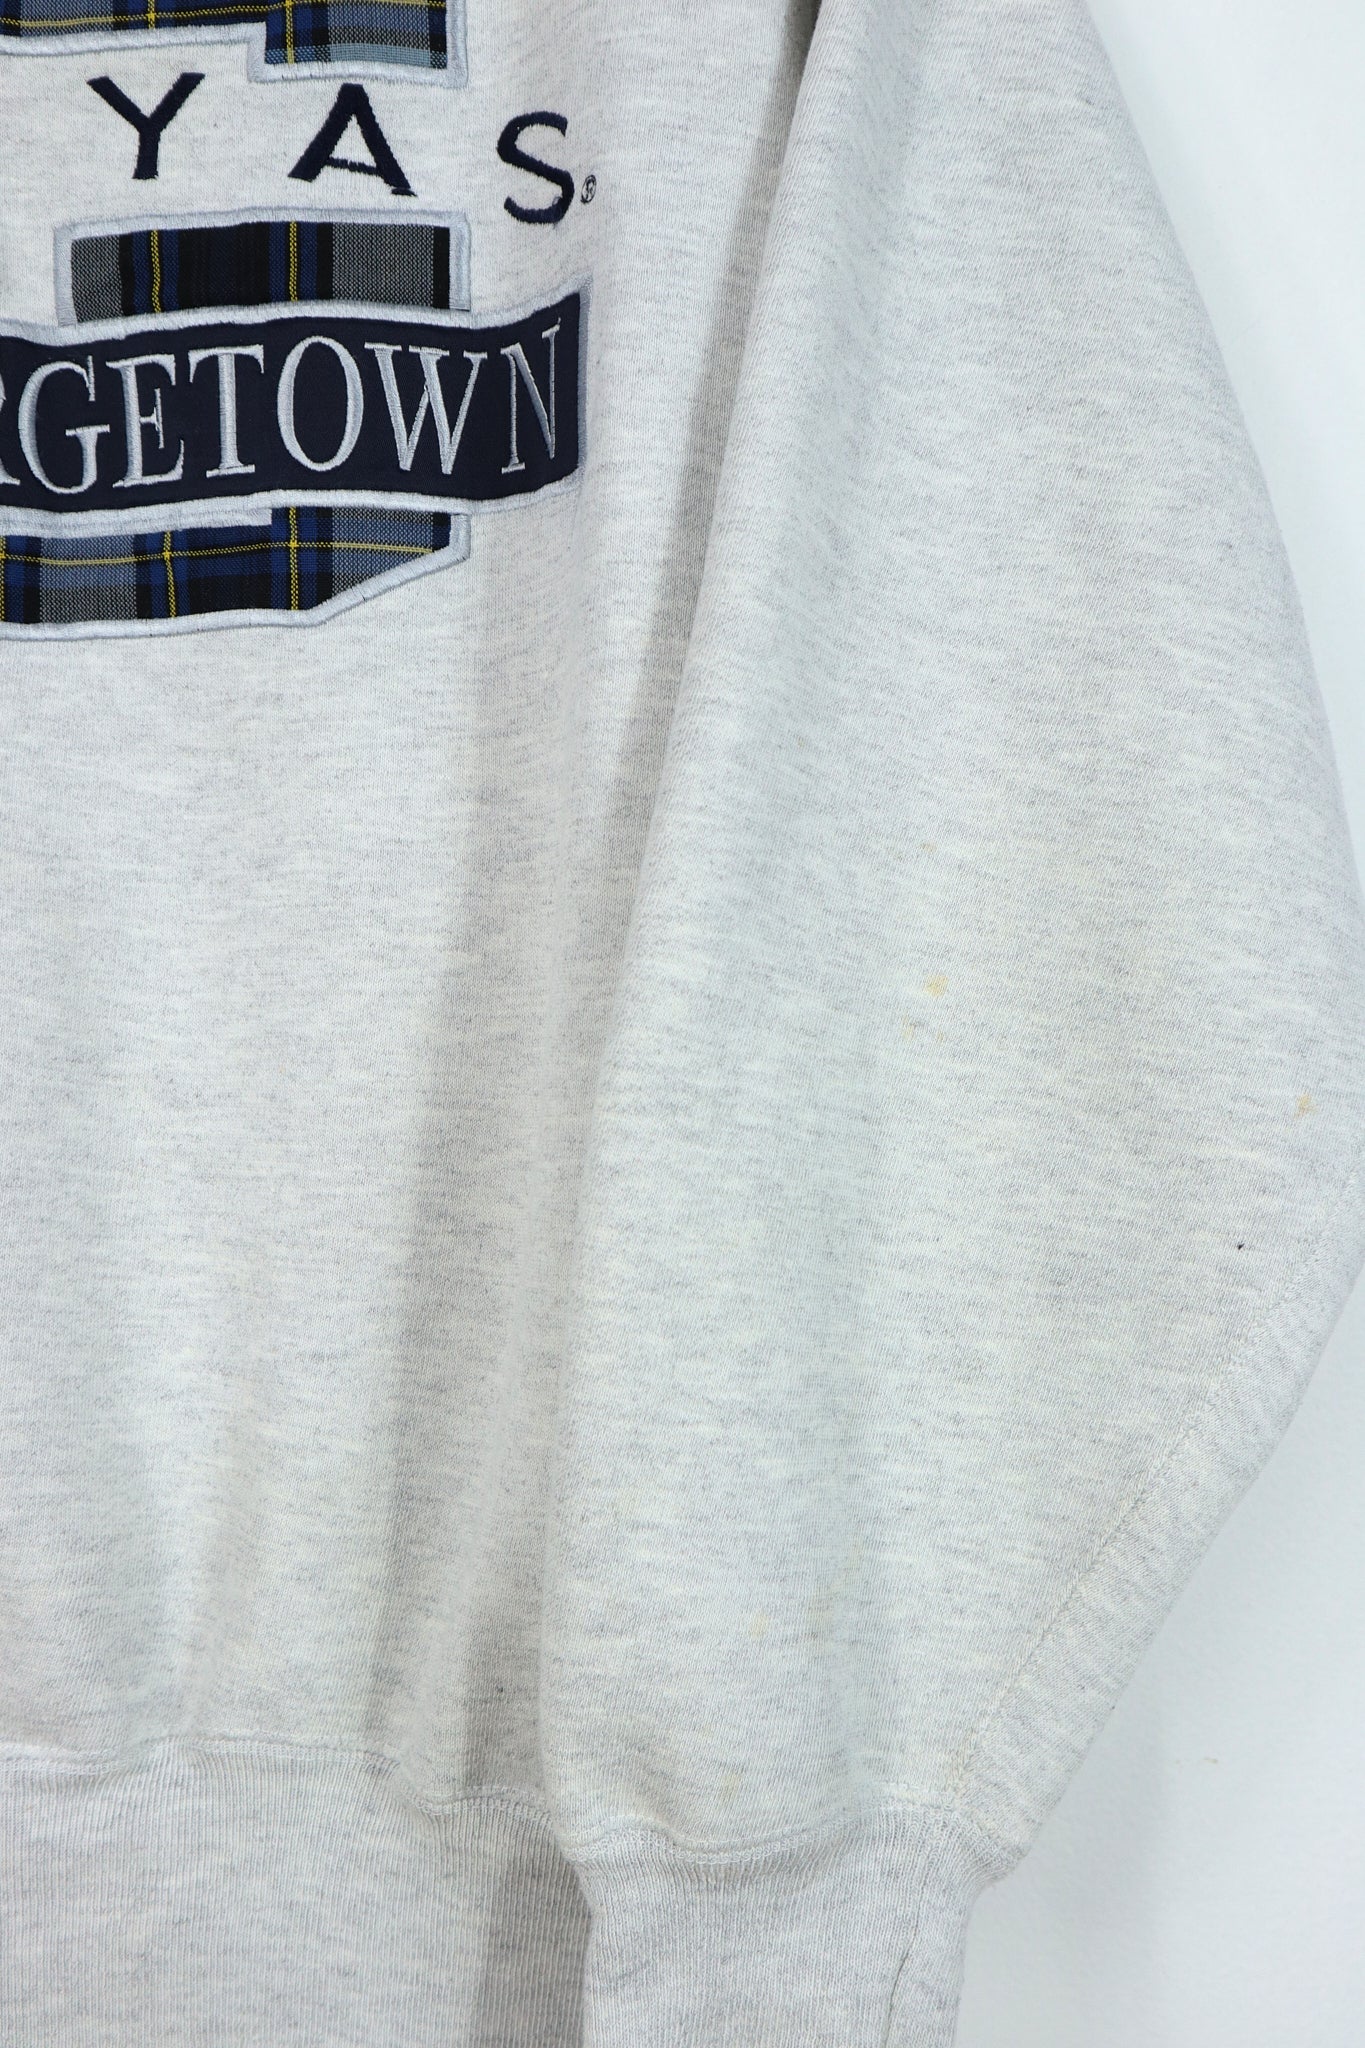 Vintage Georgetown Hoyas Crewneck